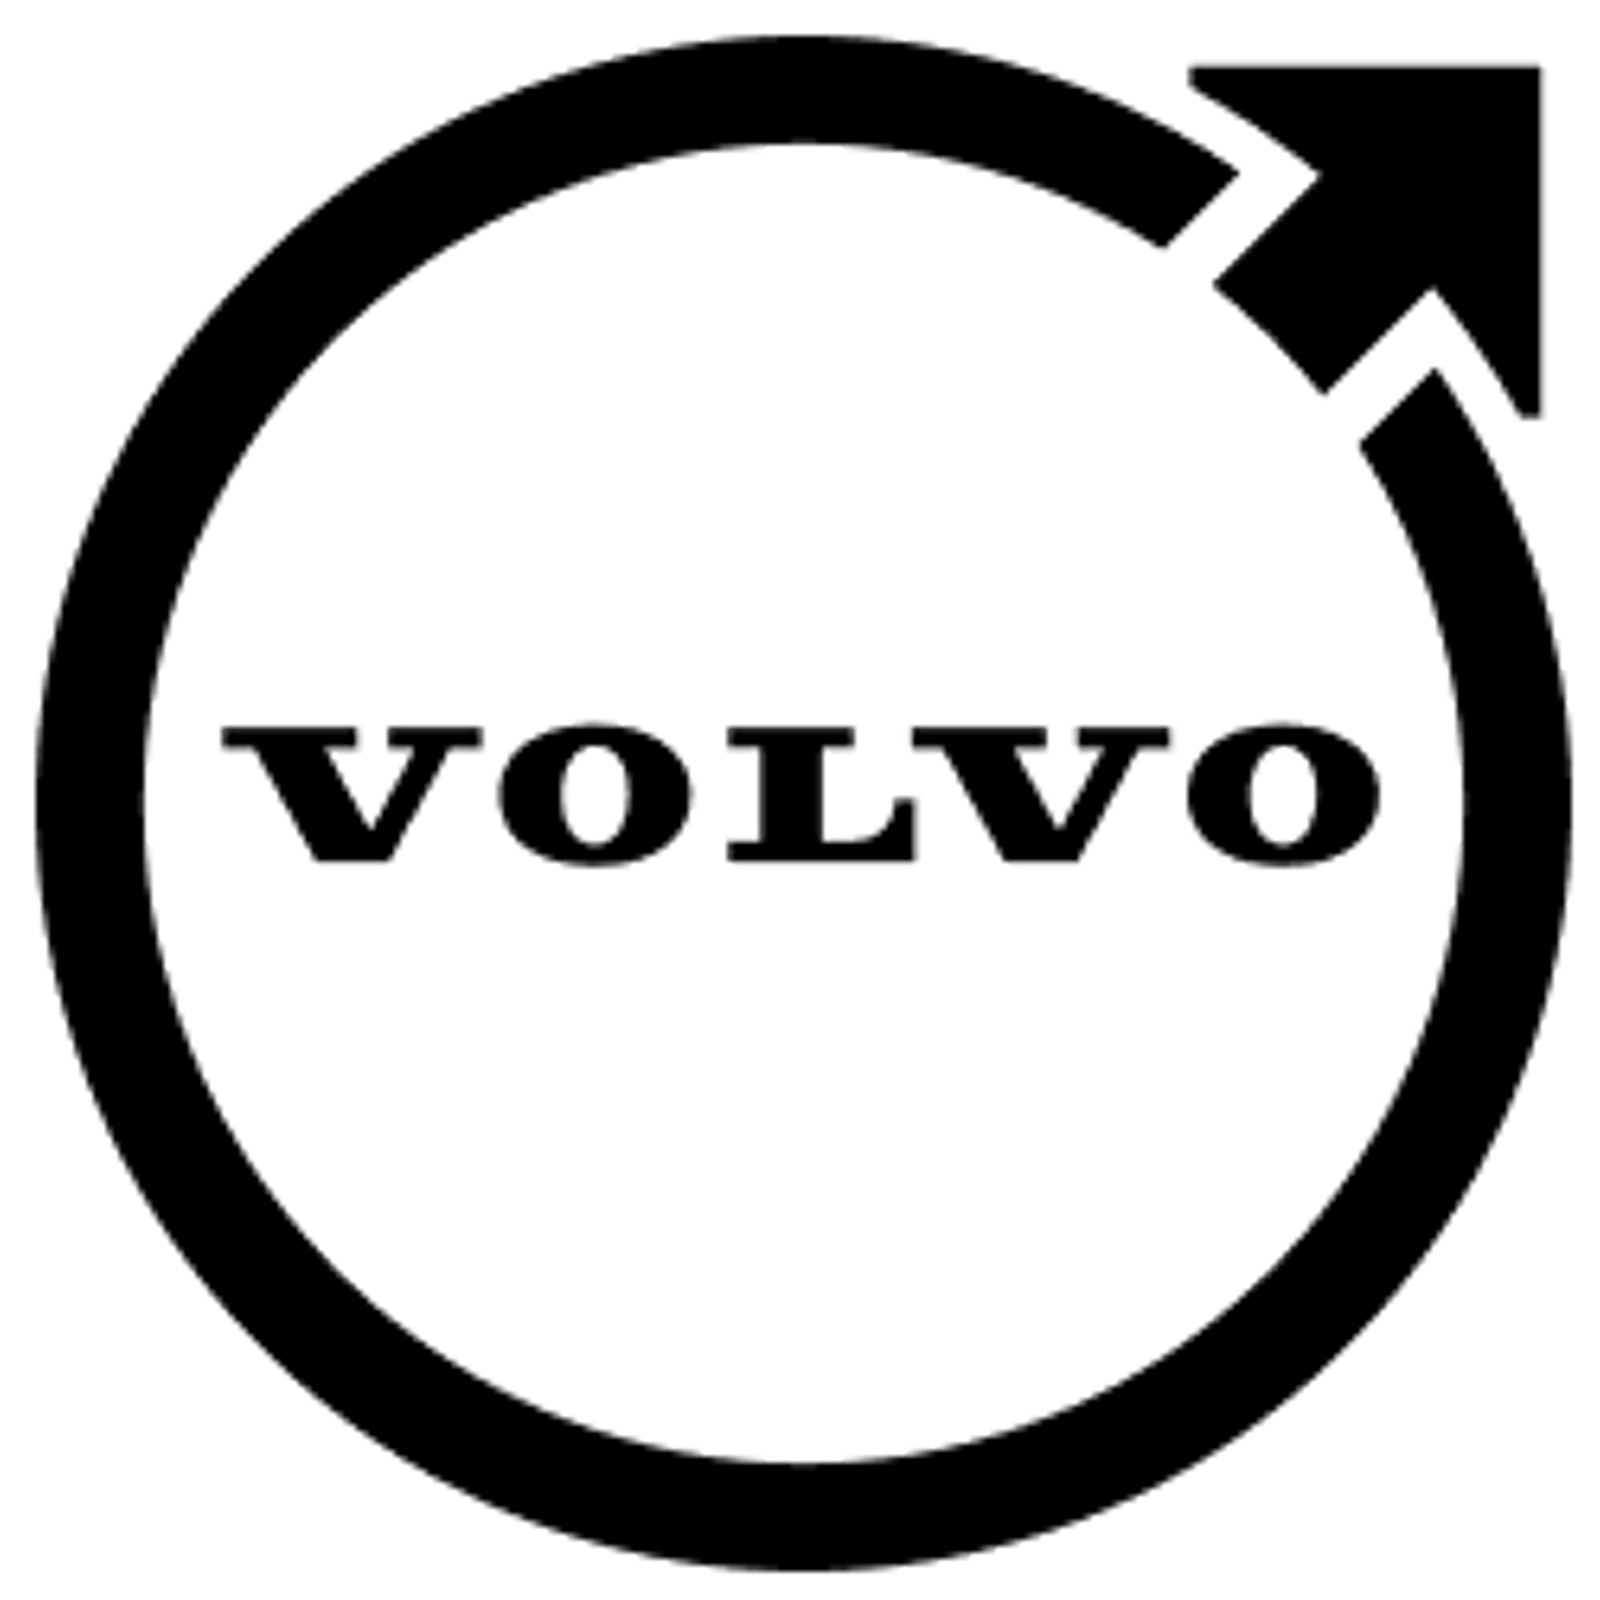 логотип Volvo